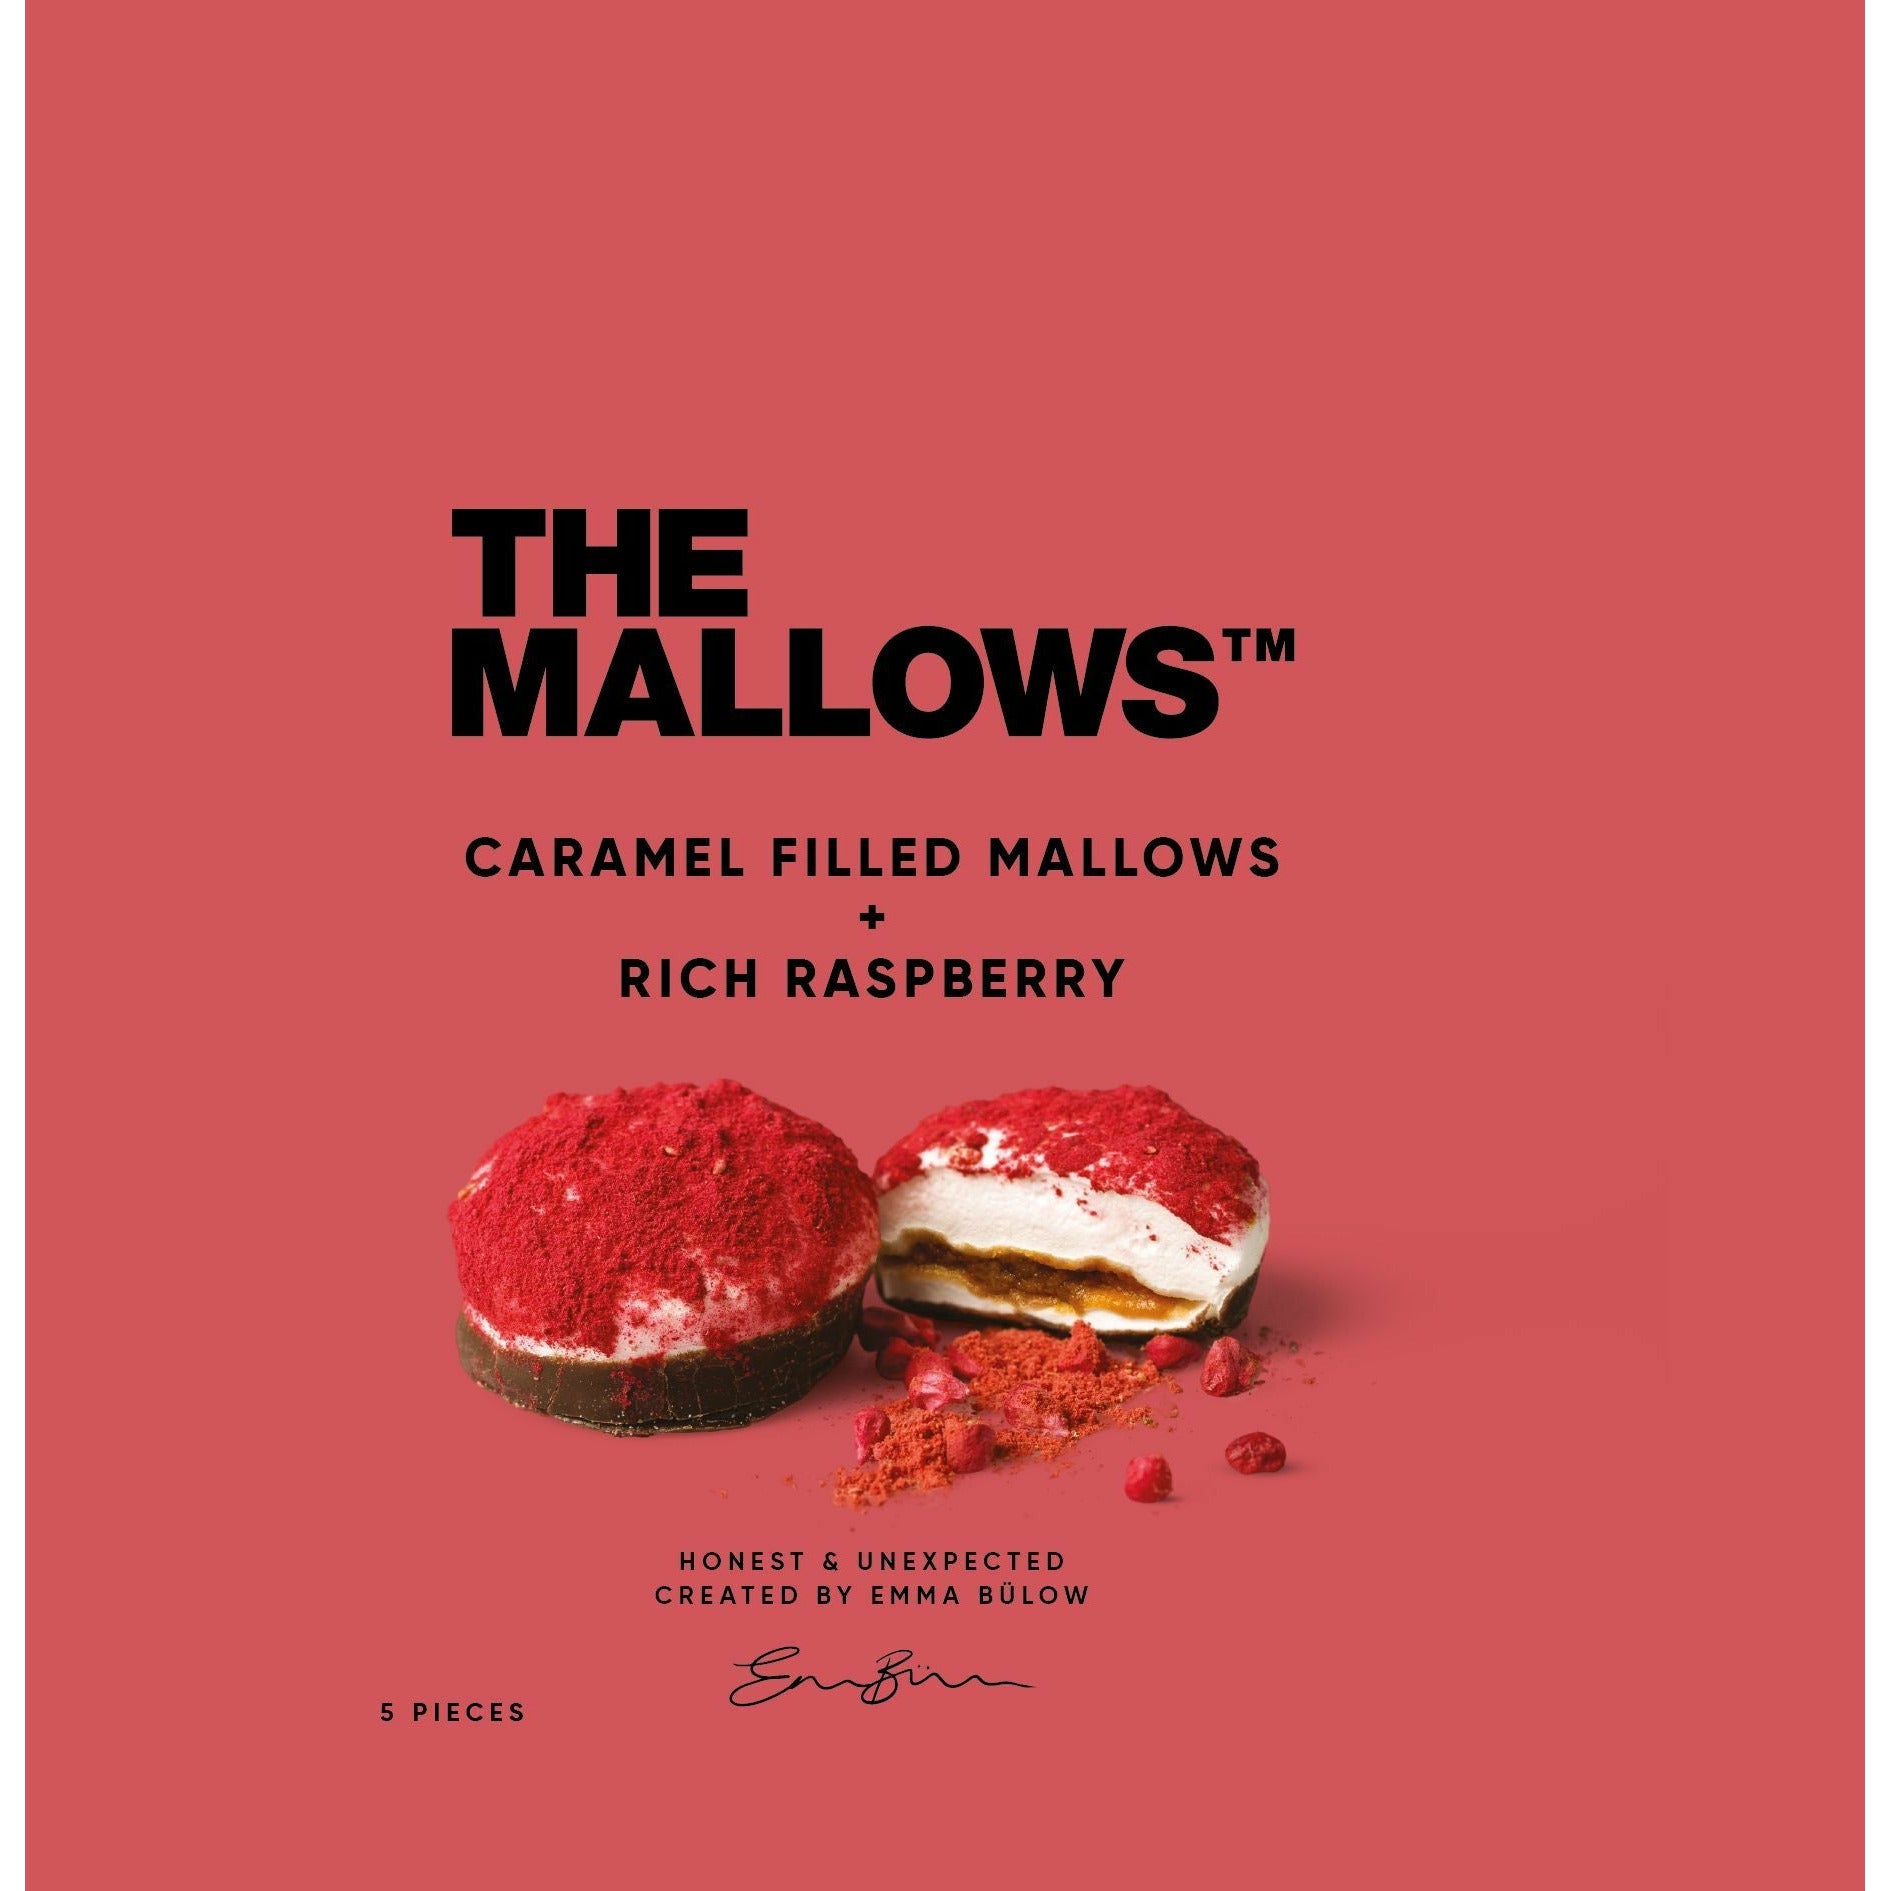 The Mallows Guimauves avec caramel remplissant une framboise riche, 55g